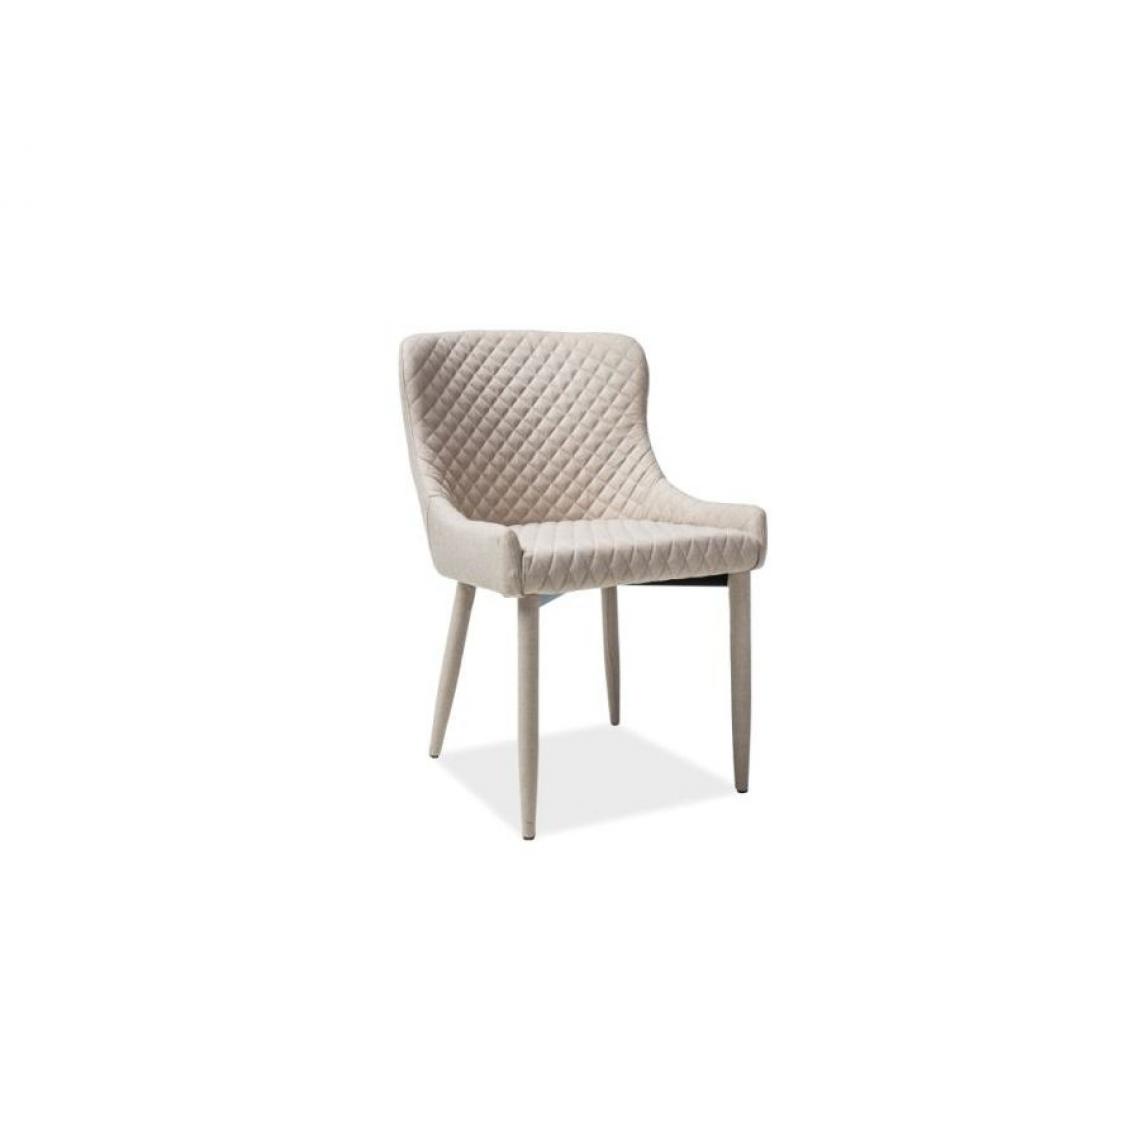 Hucoco - COLE | Chaise moderne en tissu | Dimensions : 84x51x45 cm | Rembourrage en tissu | Pieds en métal - Beige - Chaises